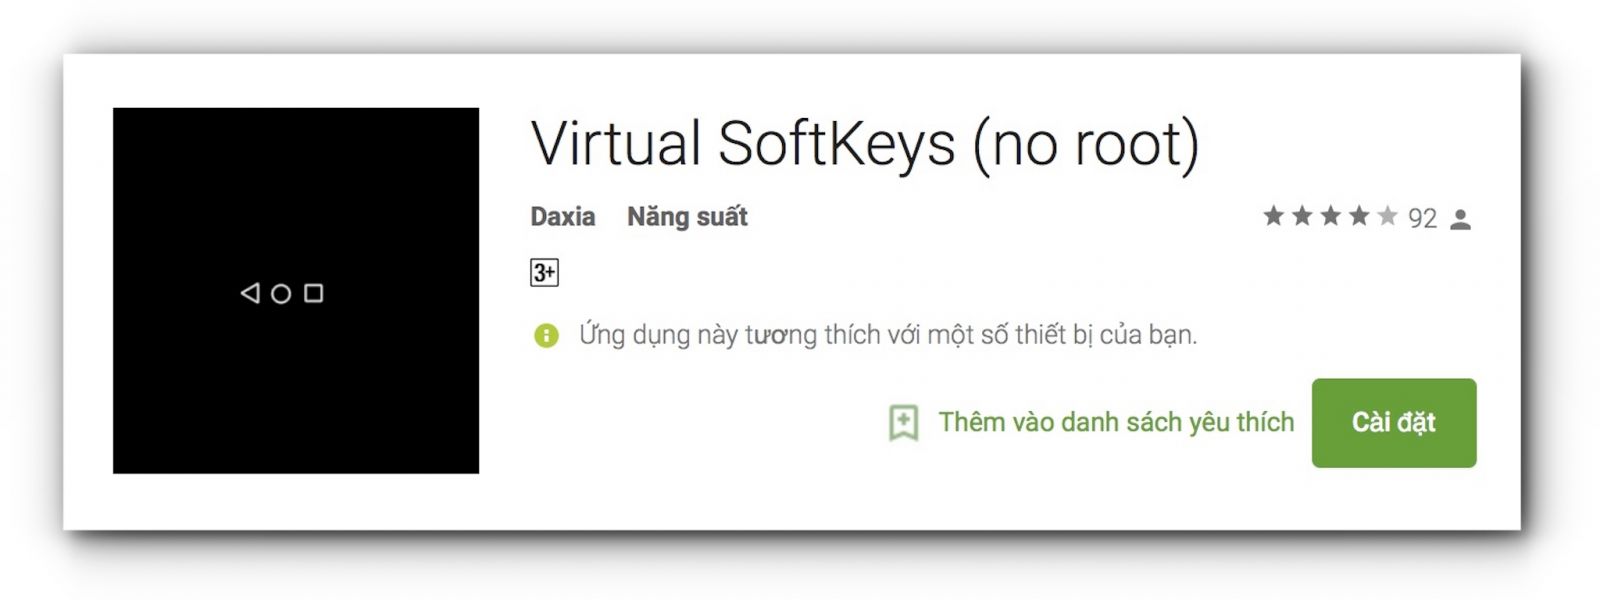 virtual softkey